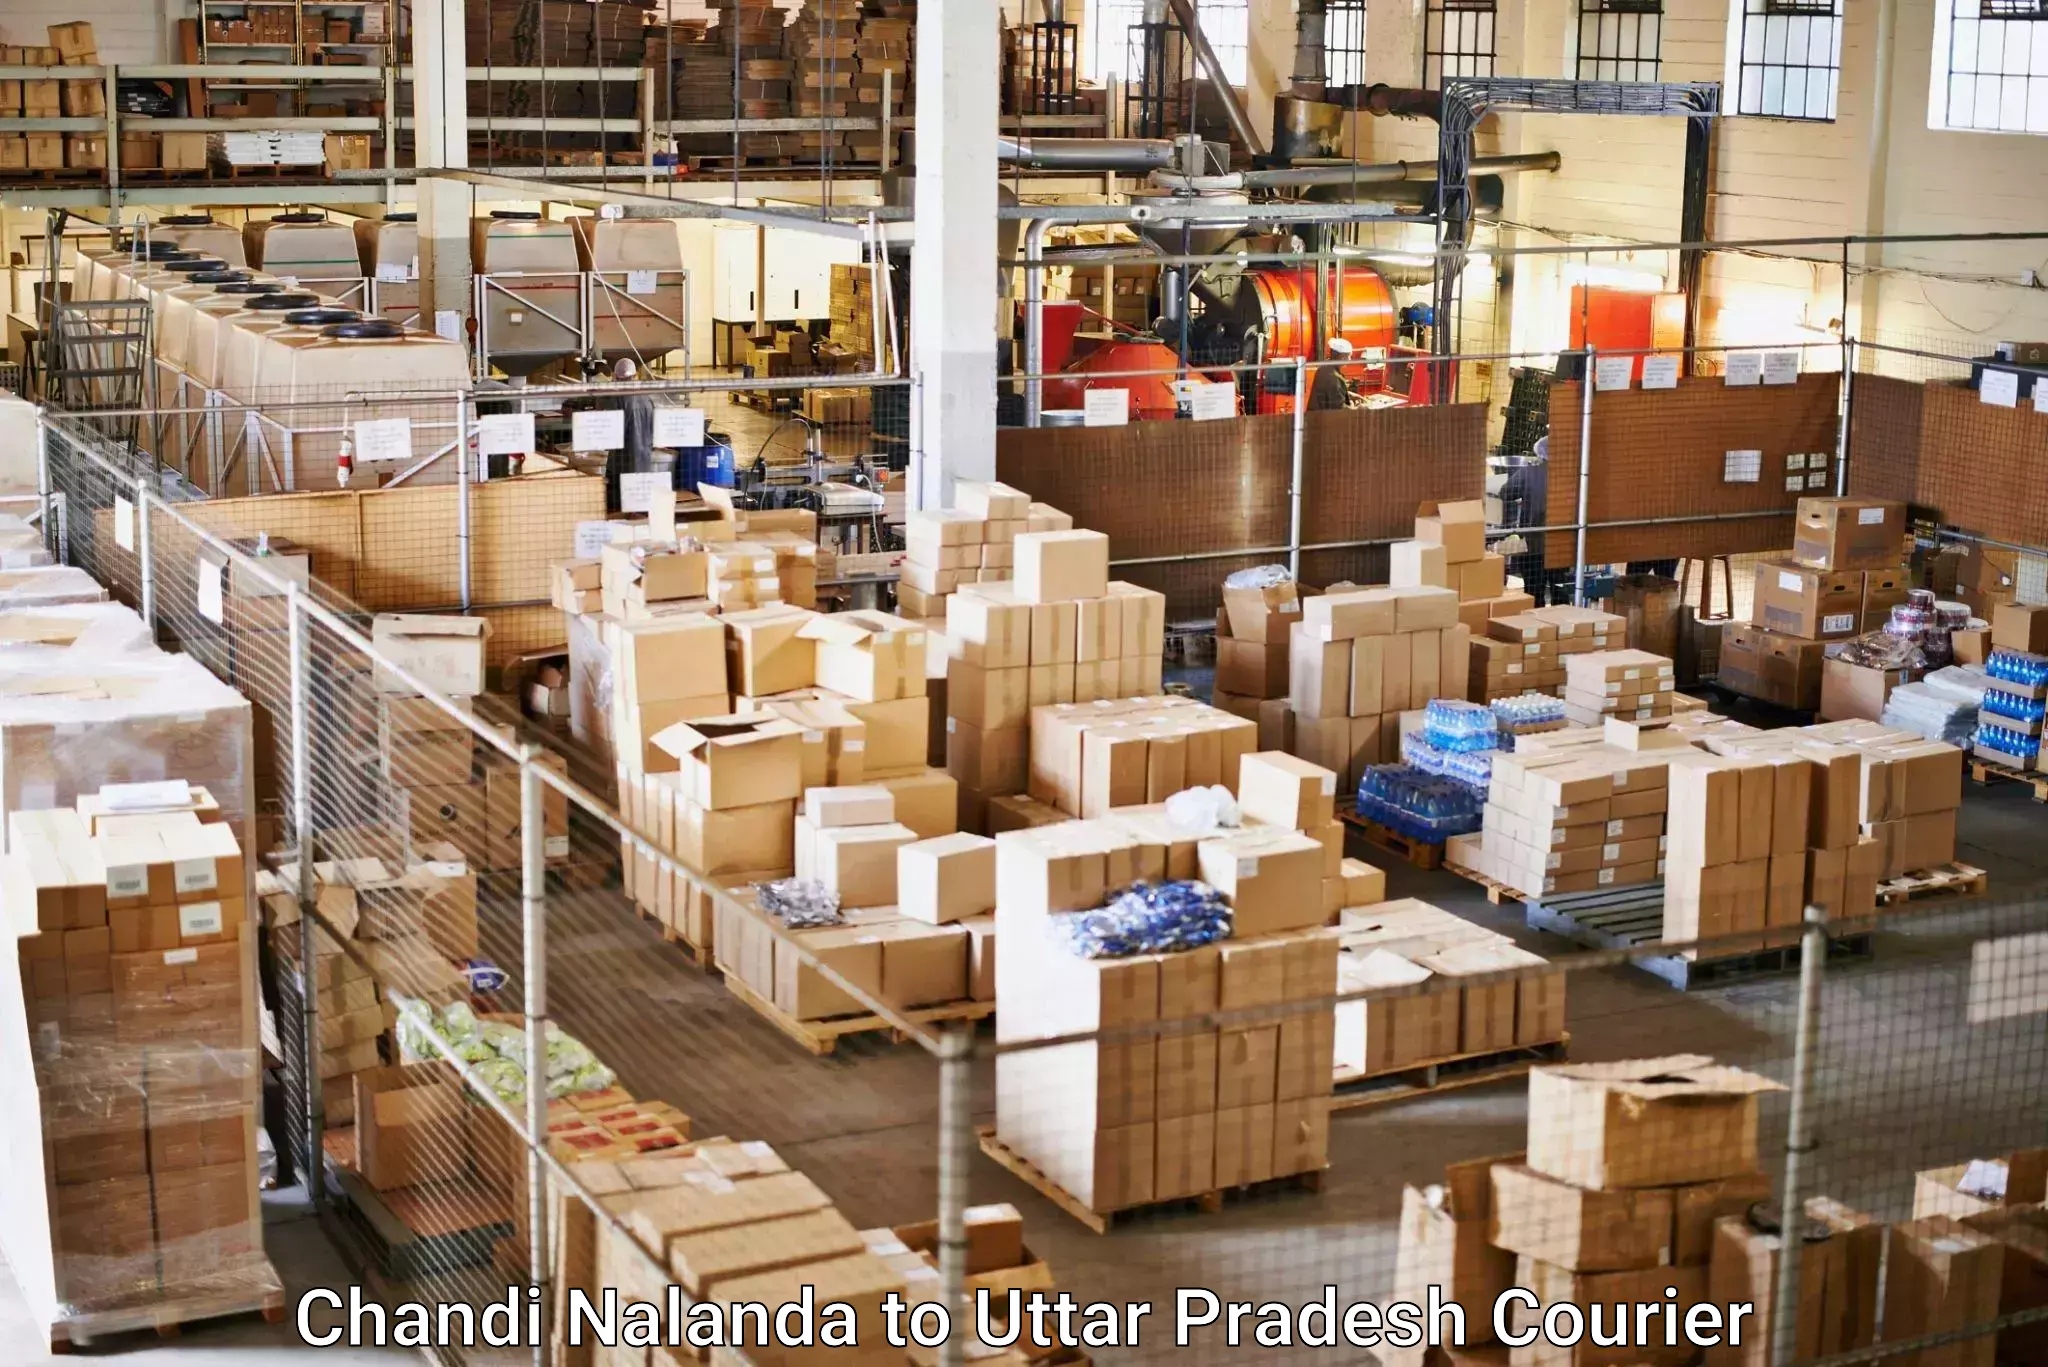 Door-to-door freight service Chandi Nalanda to Ambedkar Nagar